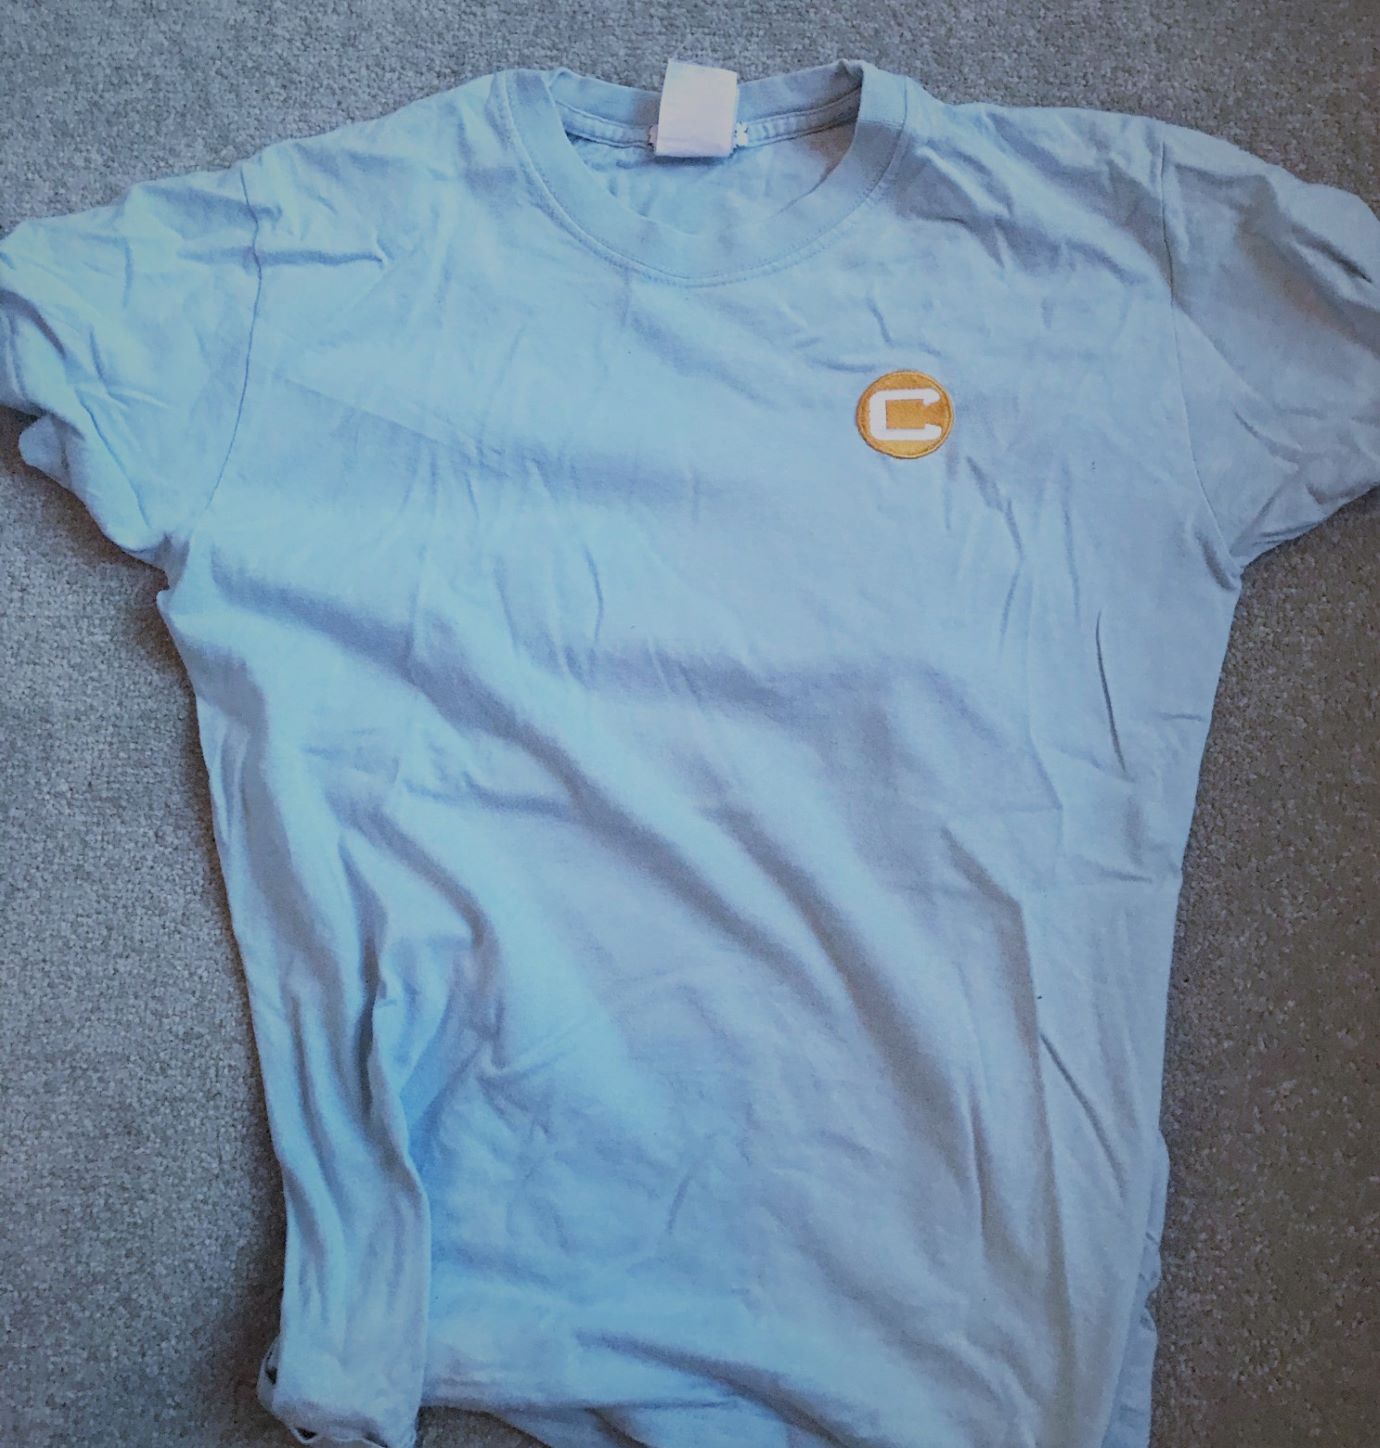 Charter North PE Shirt - 09-10 years